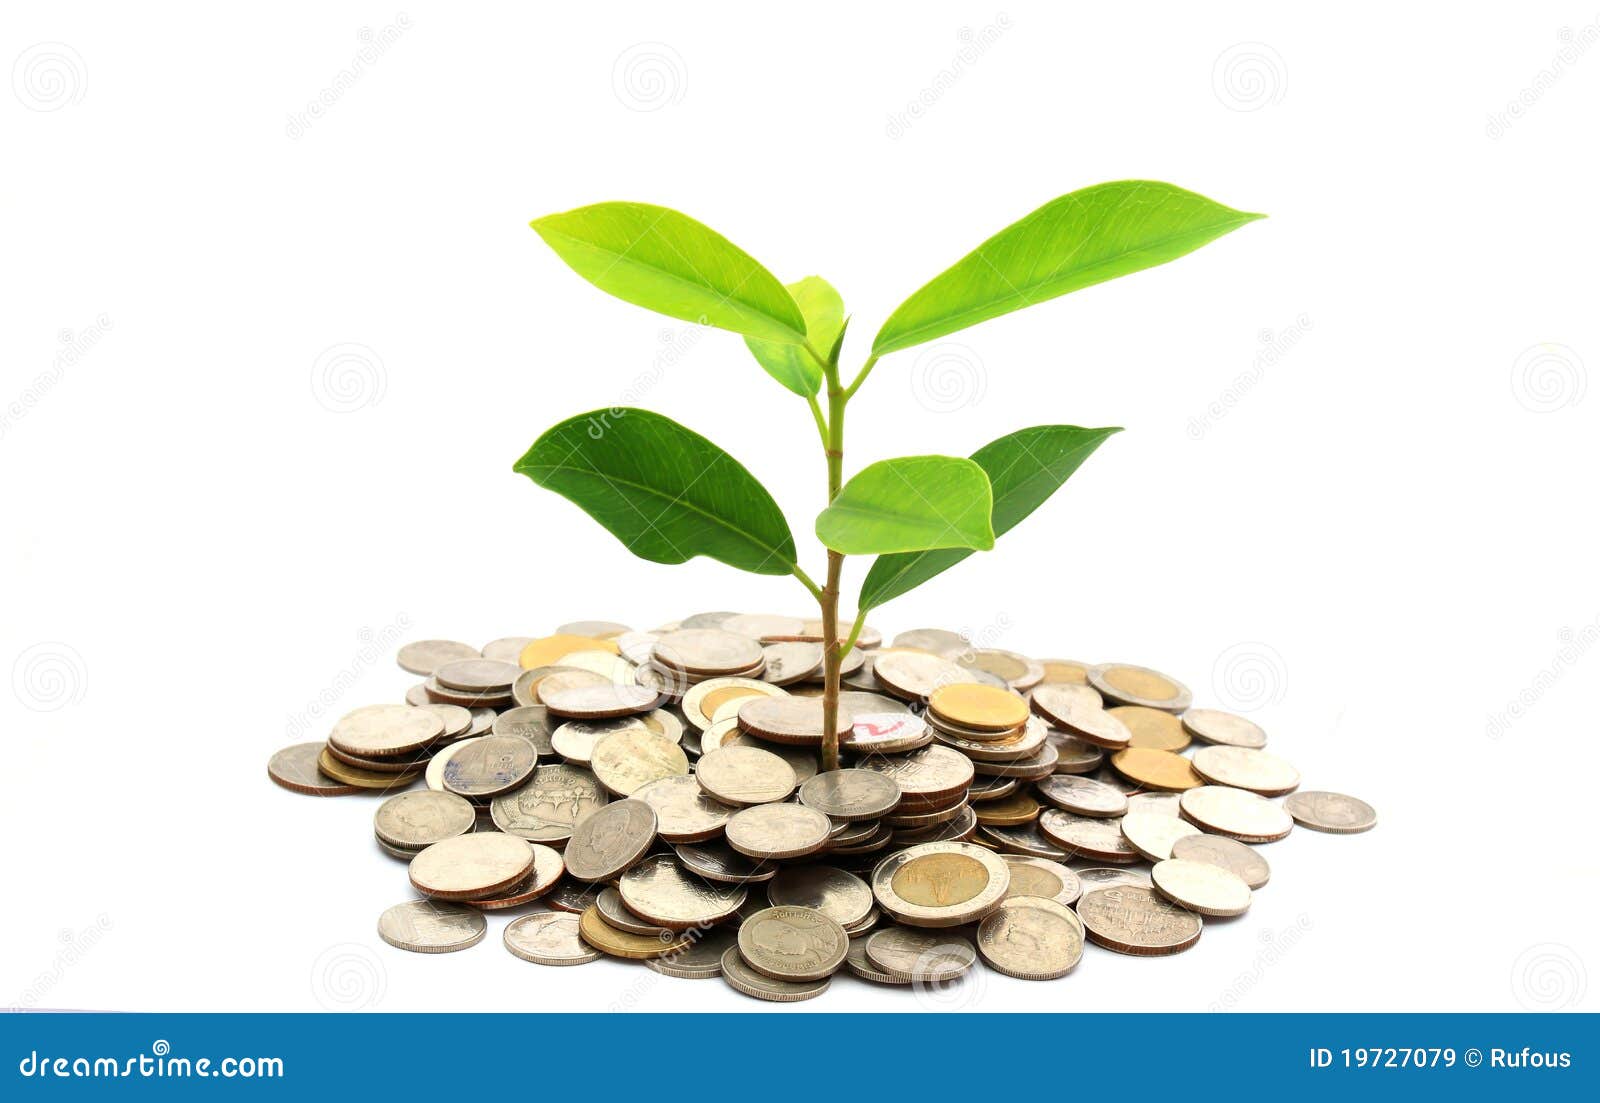 Березка деньги. Дерево с деньгами. Росток из монет. Деньги растут на деревьях. Дерево денег и финансов.